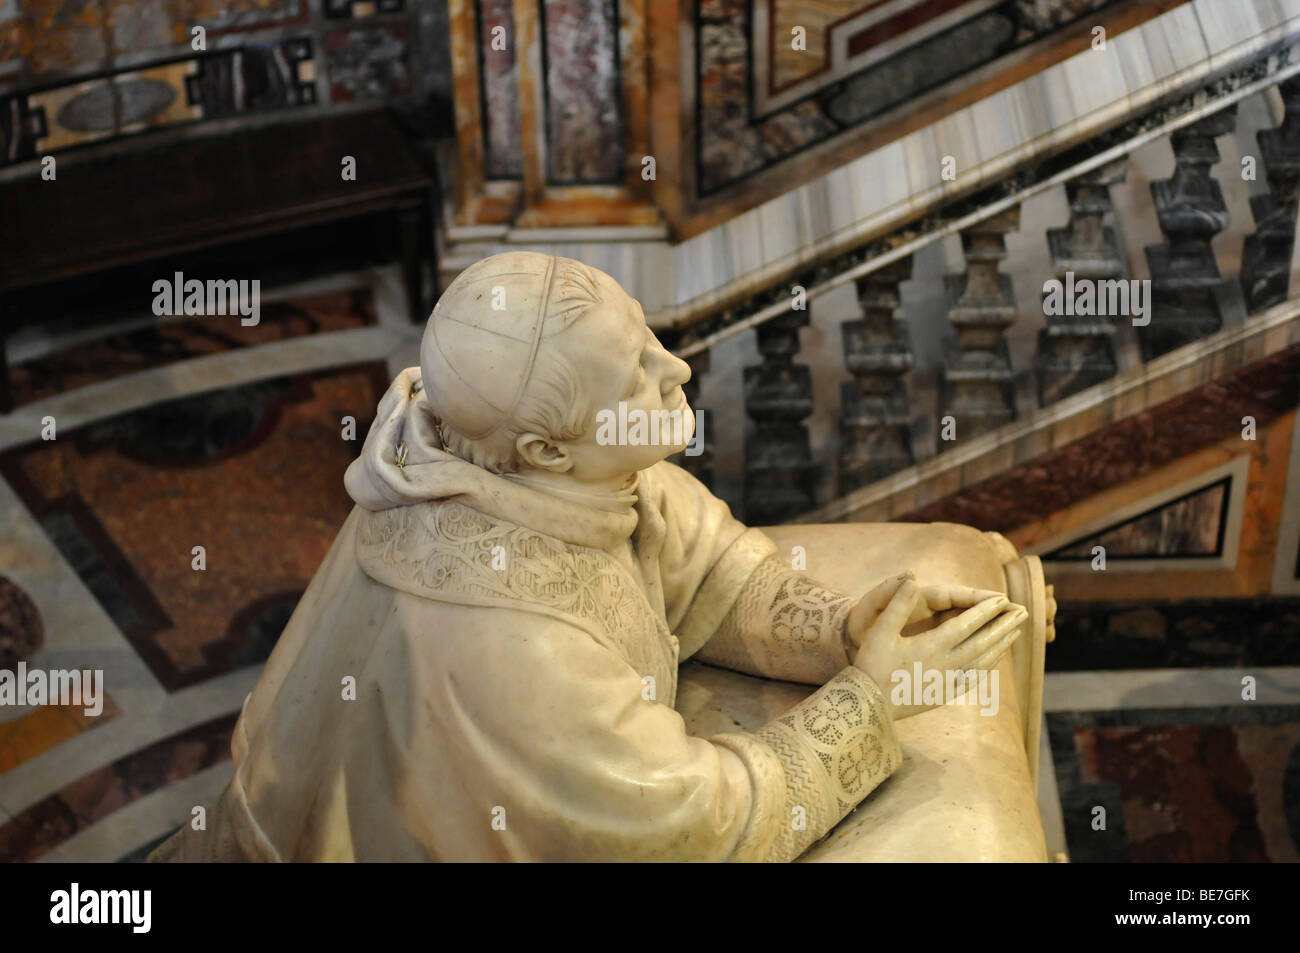 Statue of Pius IX, Basilica di Santa Maria Maggiore, historic city centre, Rome, Italy, Europe Stock Photo